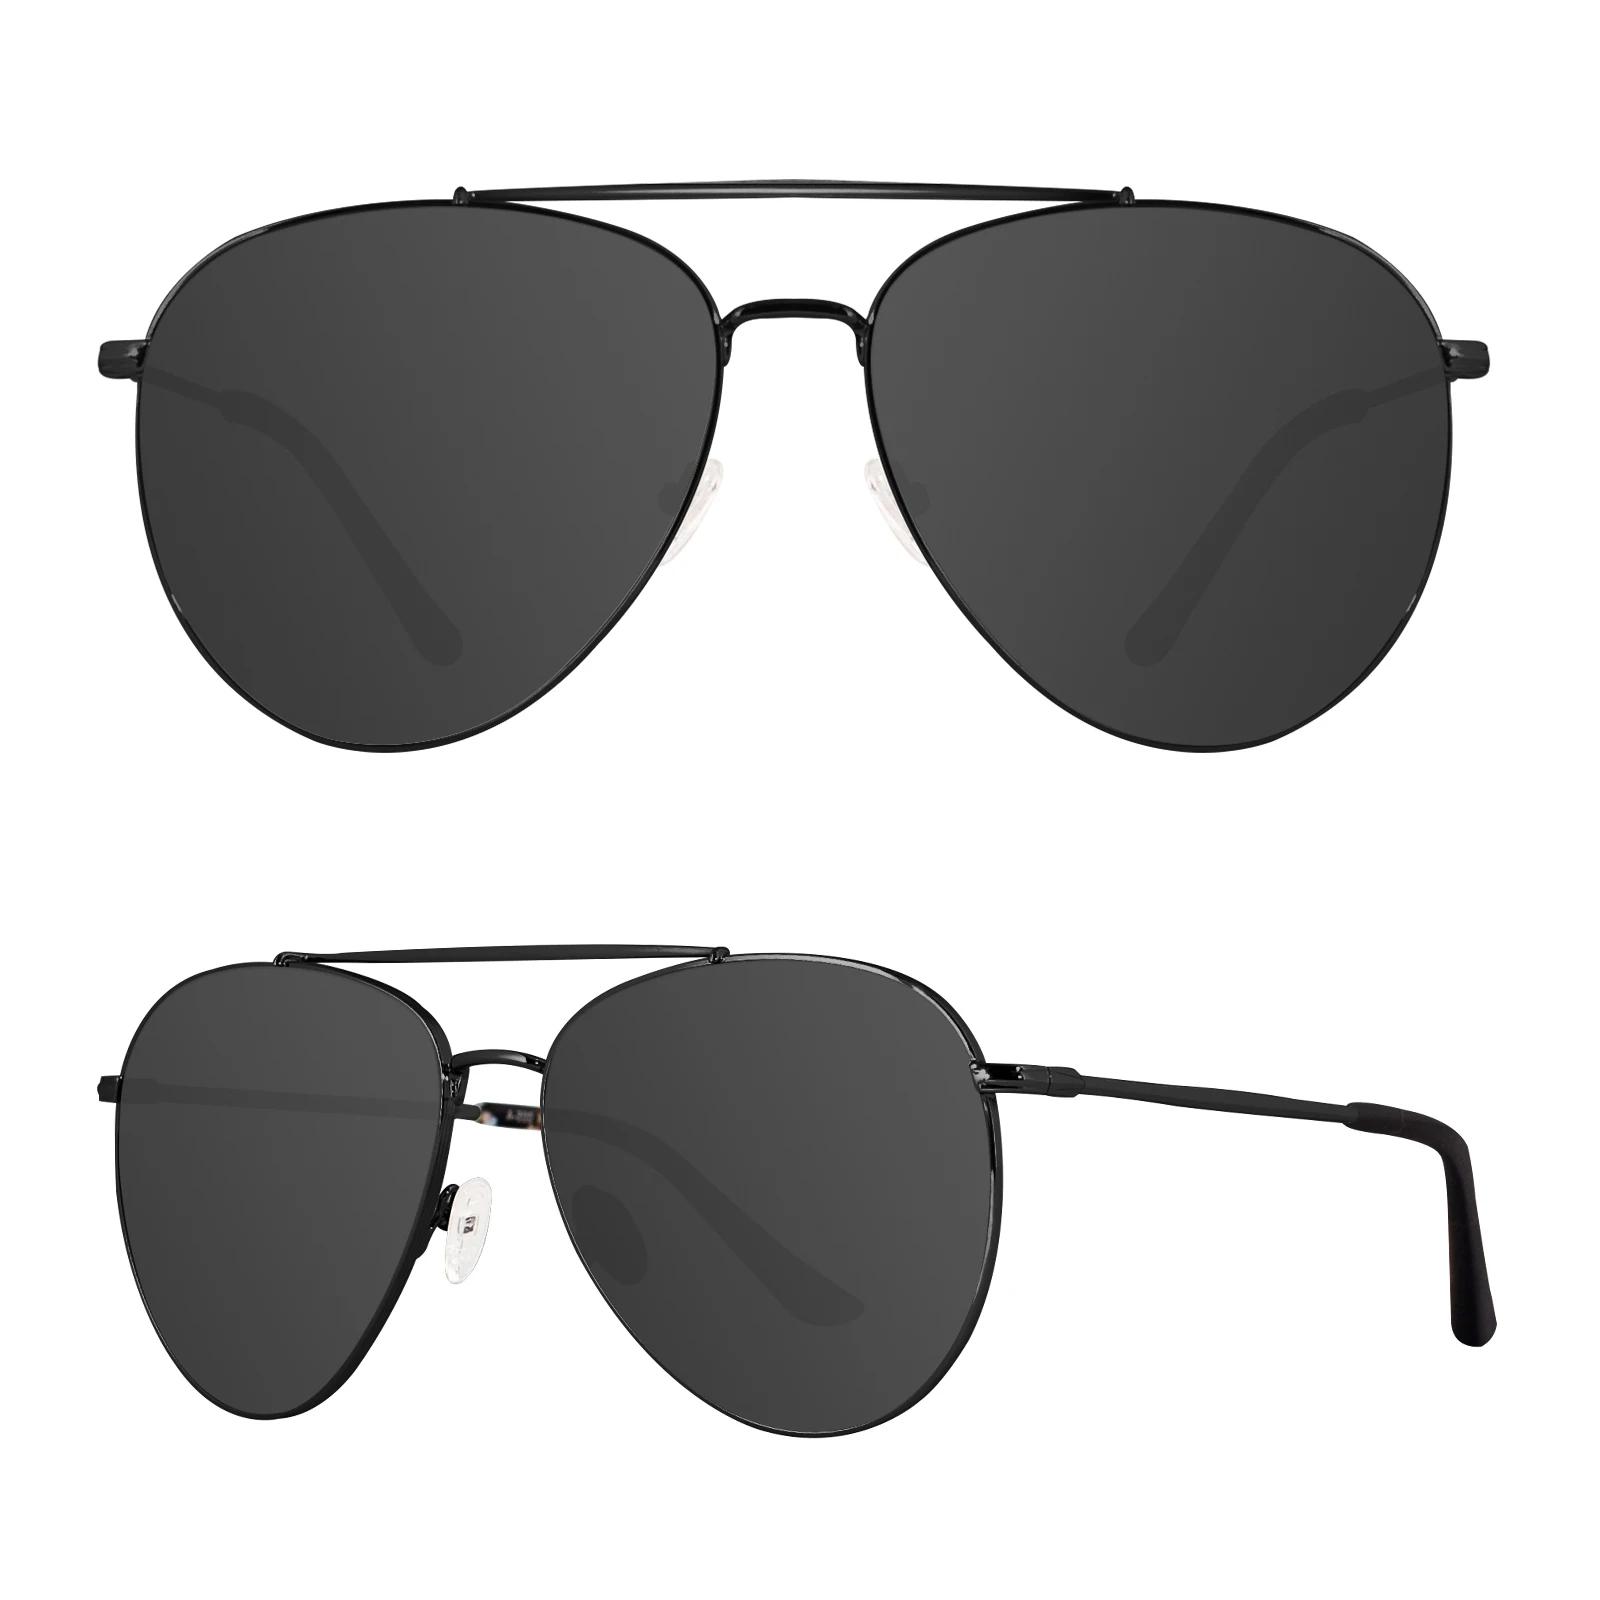 MAXJULI XL 사이즈 초대형 편광 선글라스, 대형 와이드 헤드, 남성용 금속 안경 8814, 148 mm